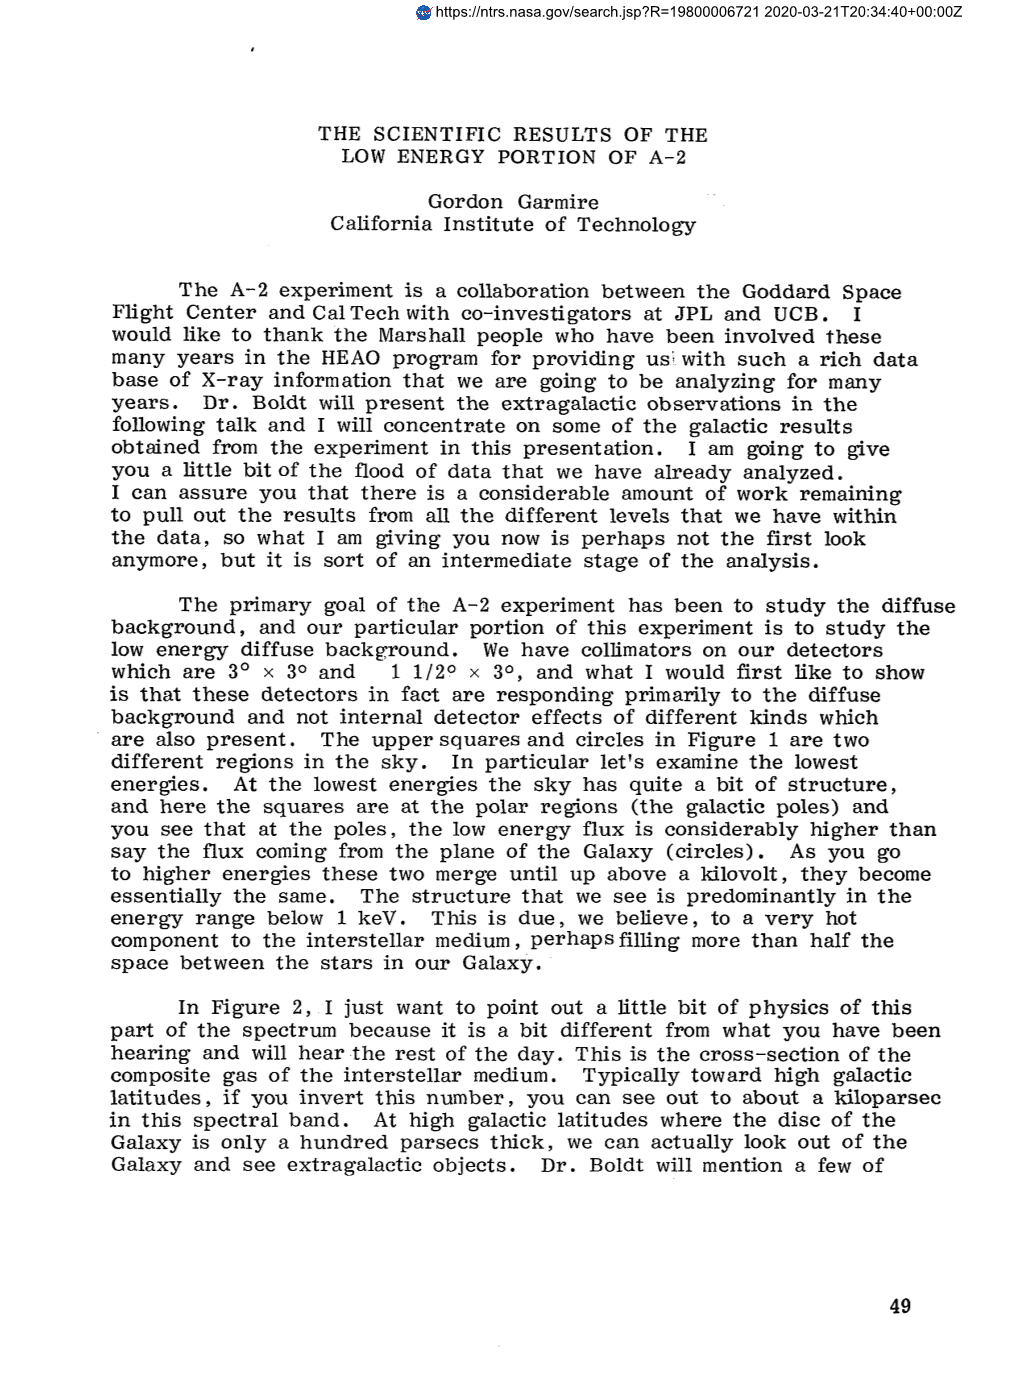 THE SCIENTIFIC RESULTS of the Gordon Garmire California Institute